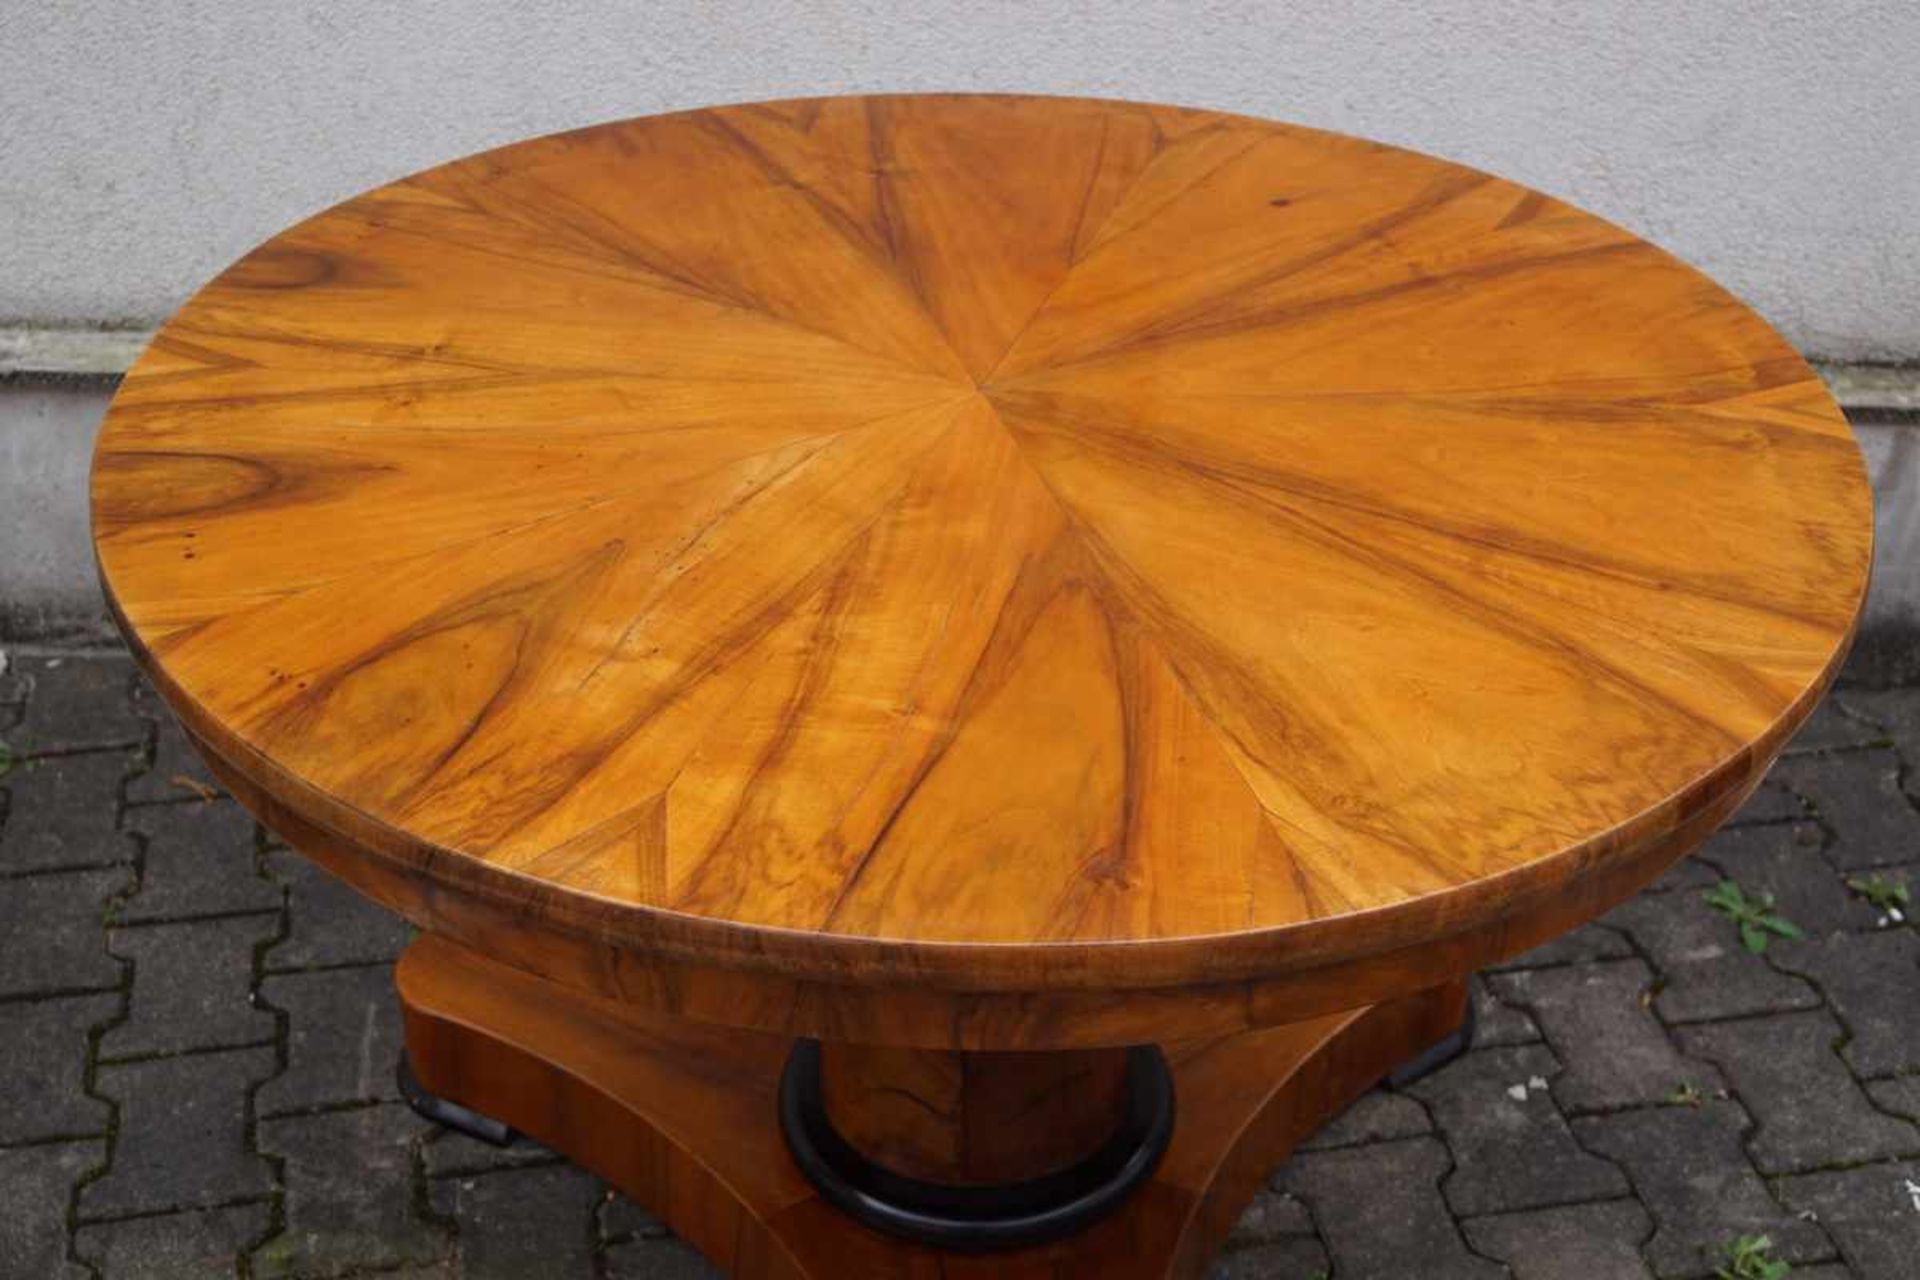 Runder Tisch des Biedermeier, süddeutsch um 1835 Nussbaum auf Weichholz furniert, der Fuß in Form - Bild 2 aus 2